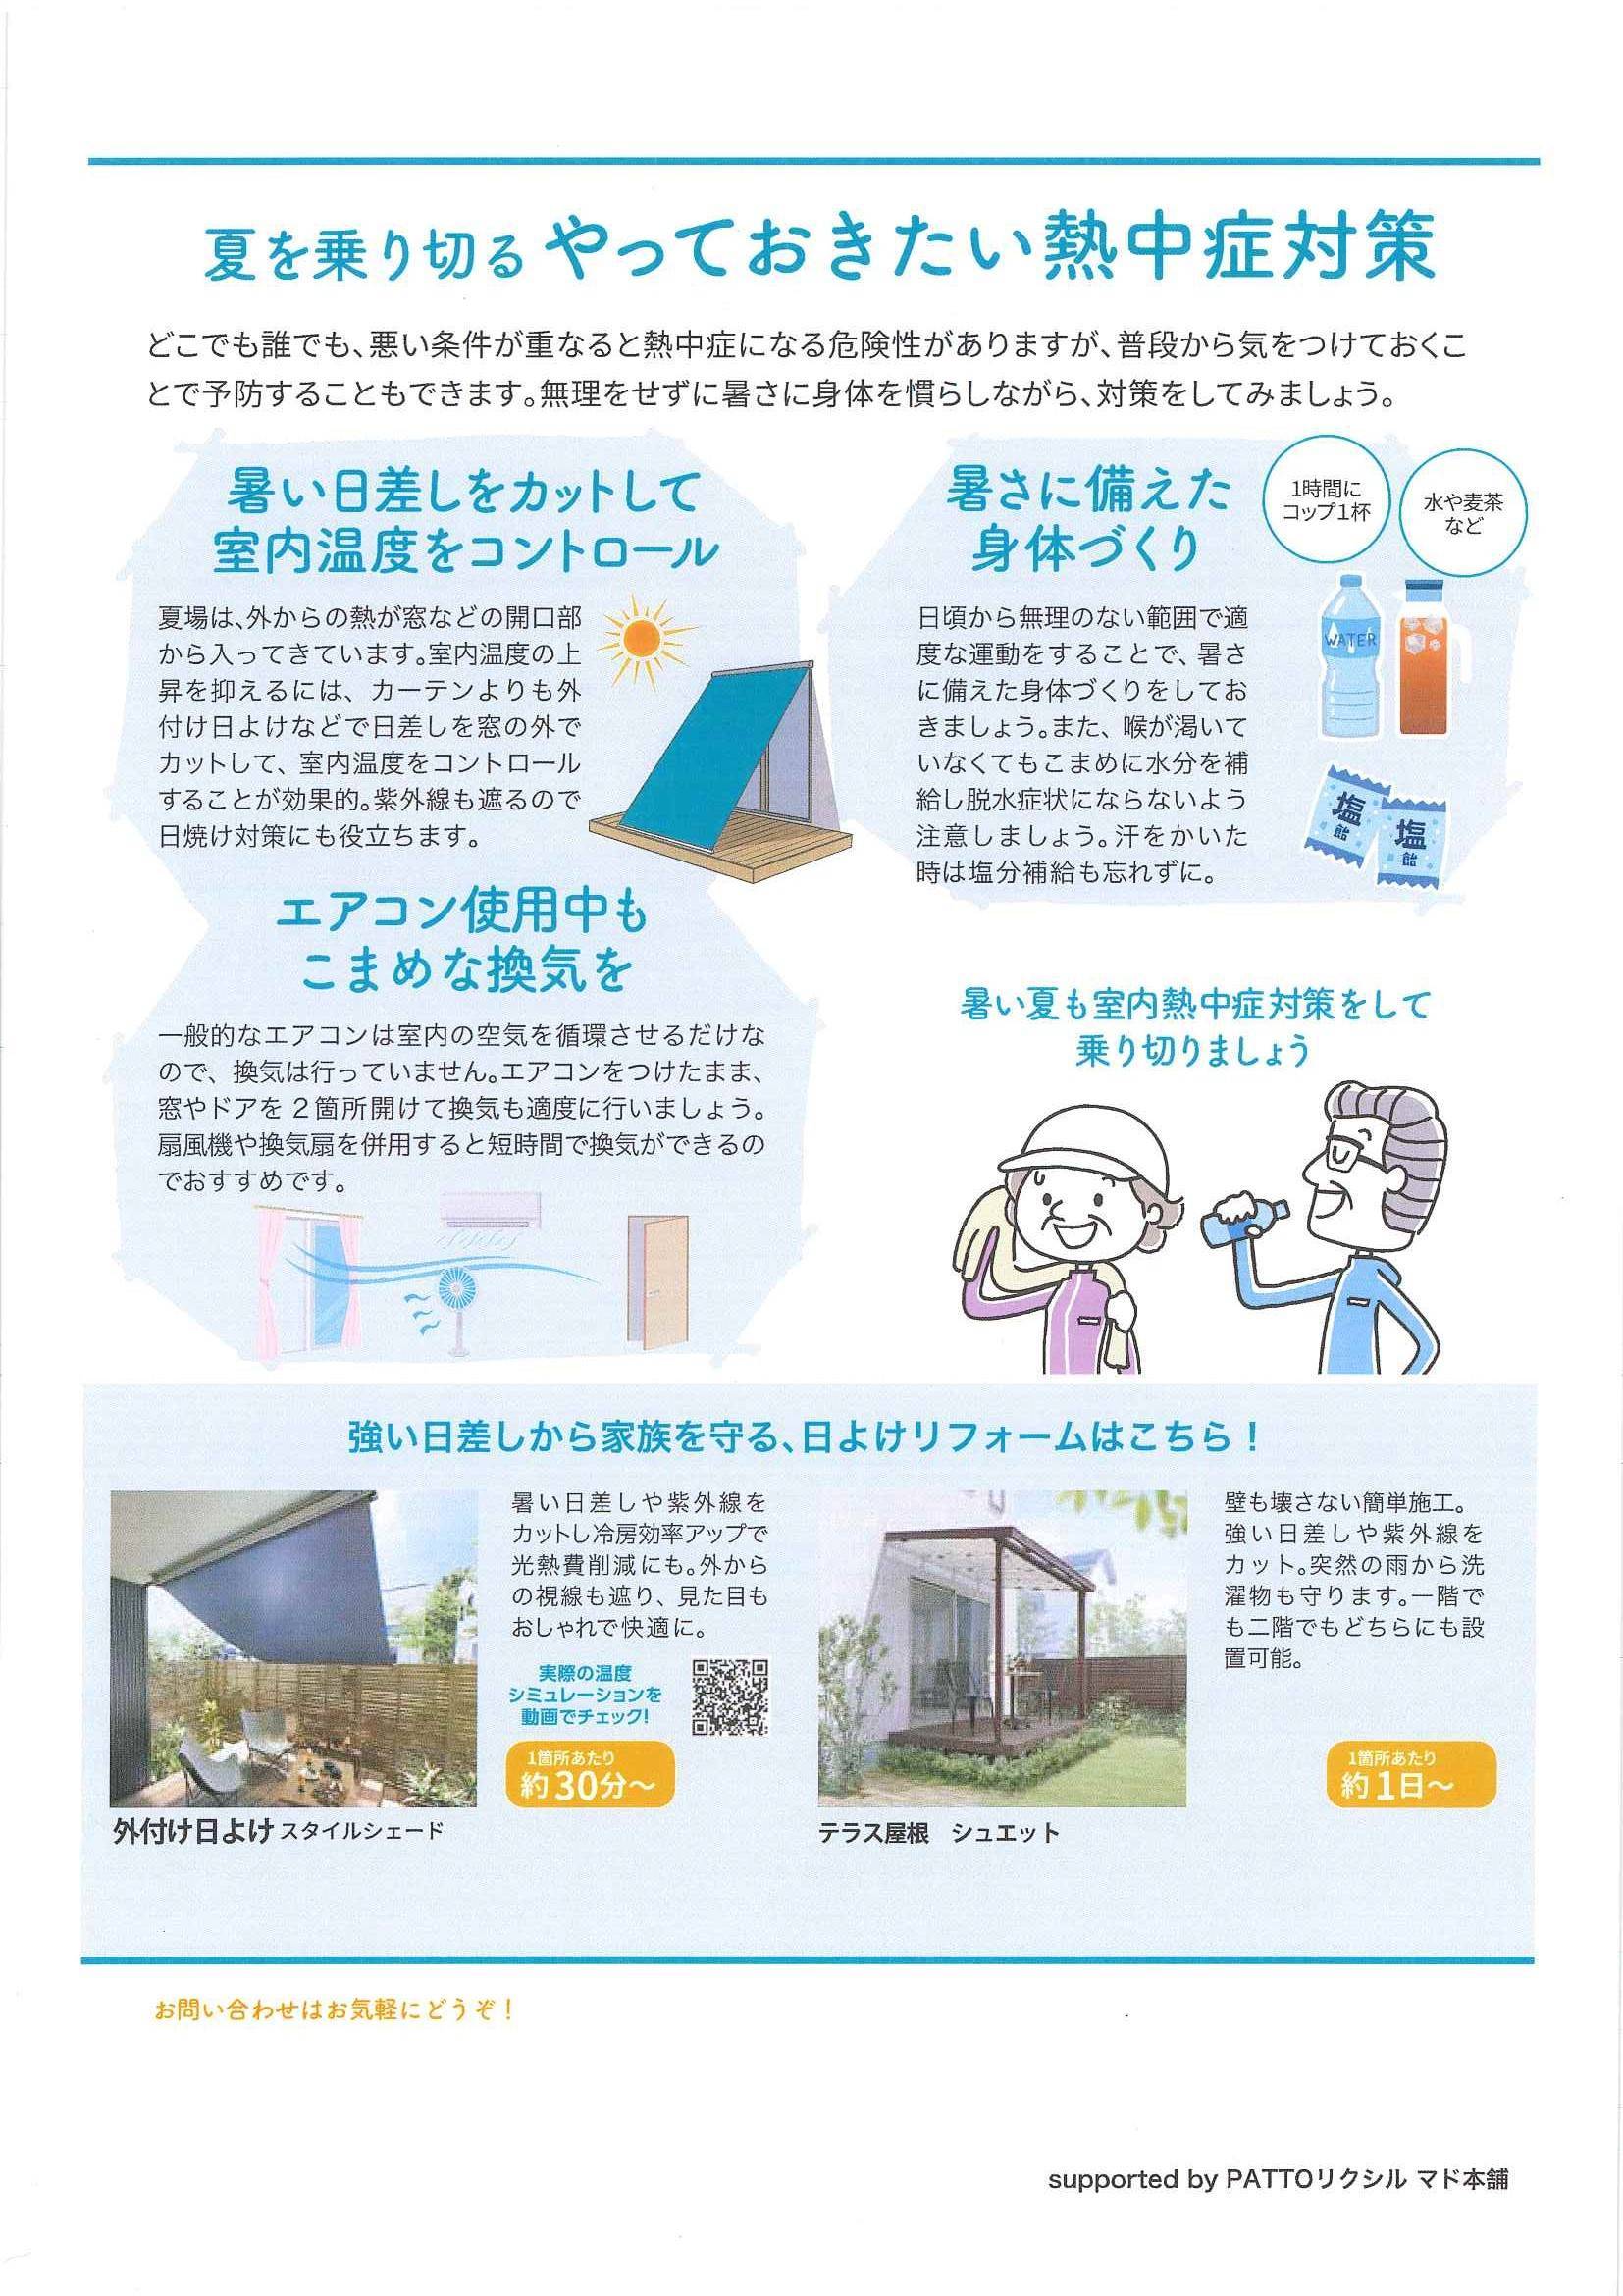 知って得する住まいの快適・健康だより 横浜トーヨー住器のイベントキャンペーン 写真2